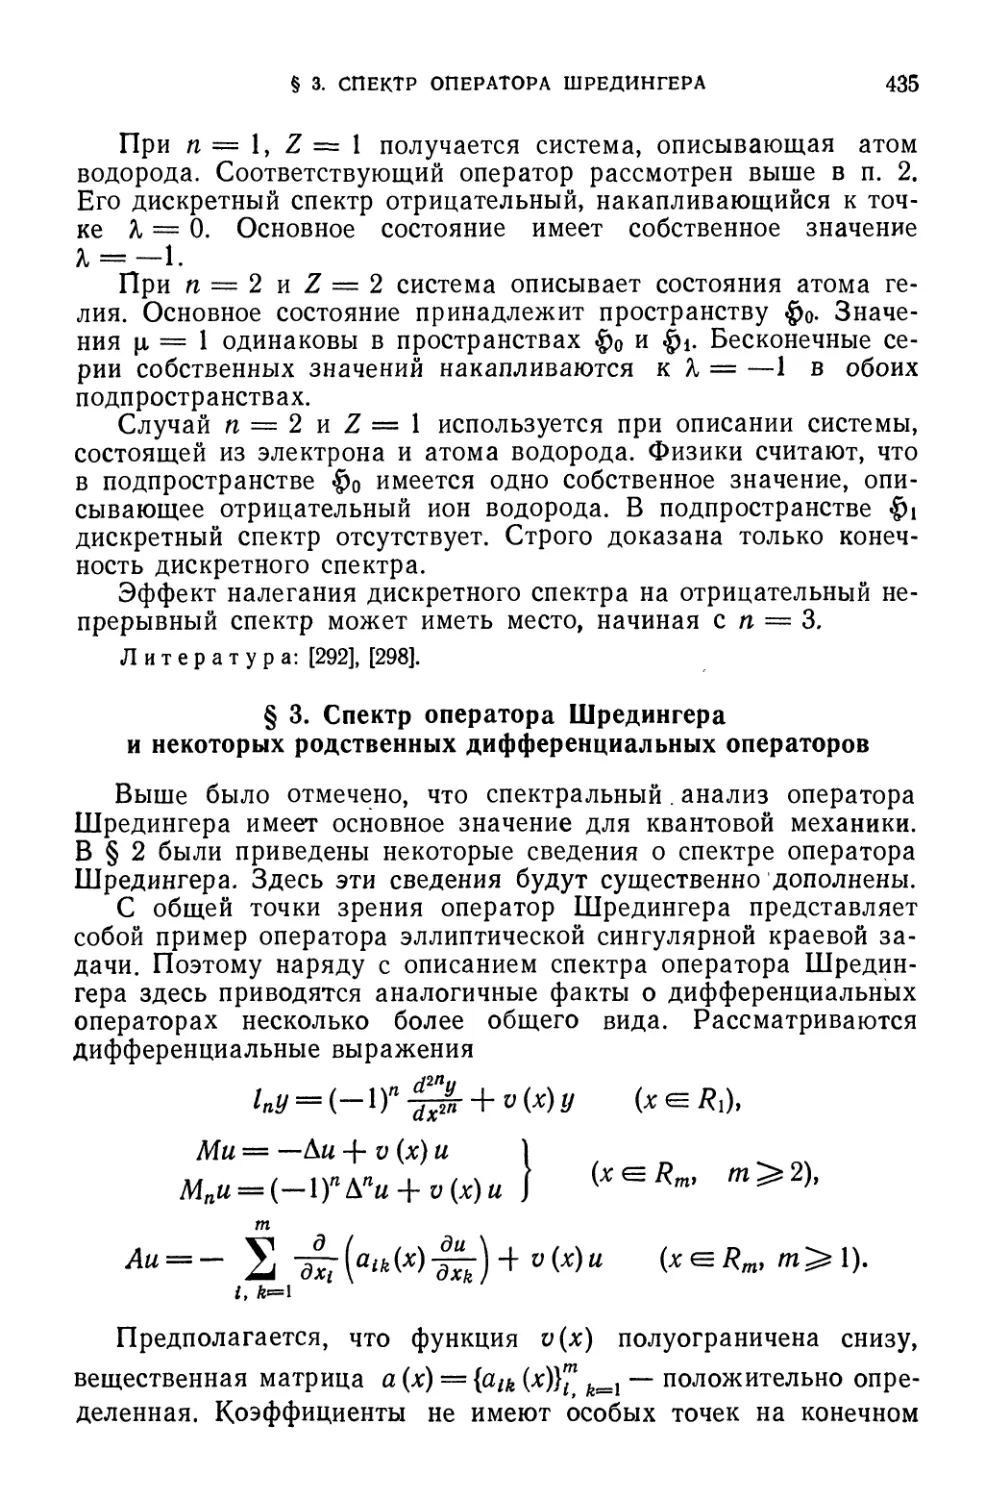 § 3. Спектр оператора Шредингера и некоторых родственных дифференциальных операторов